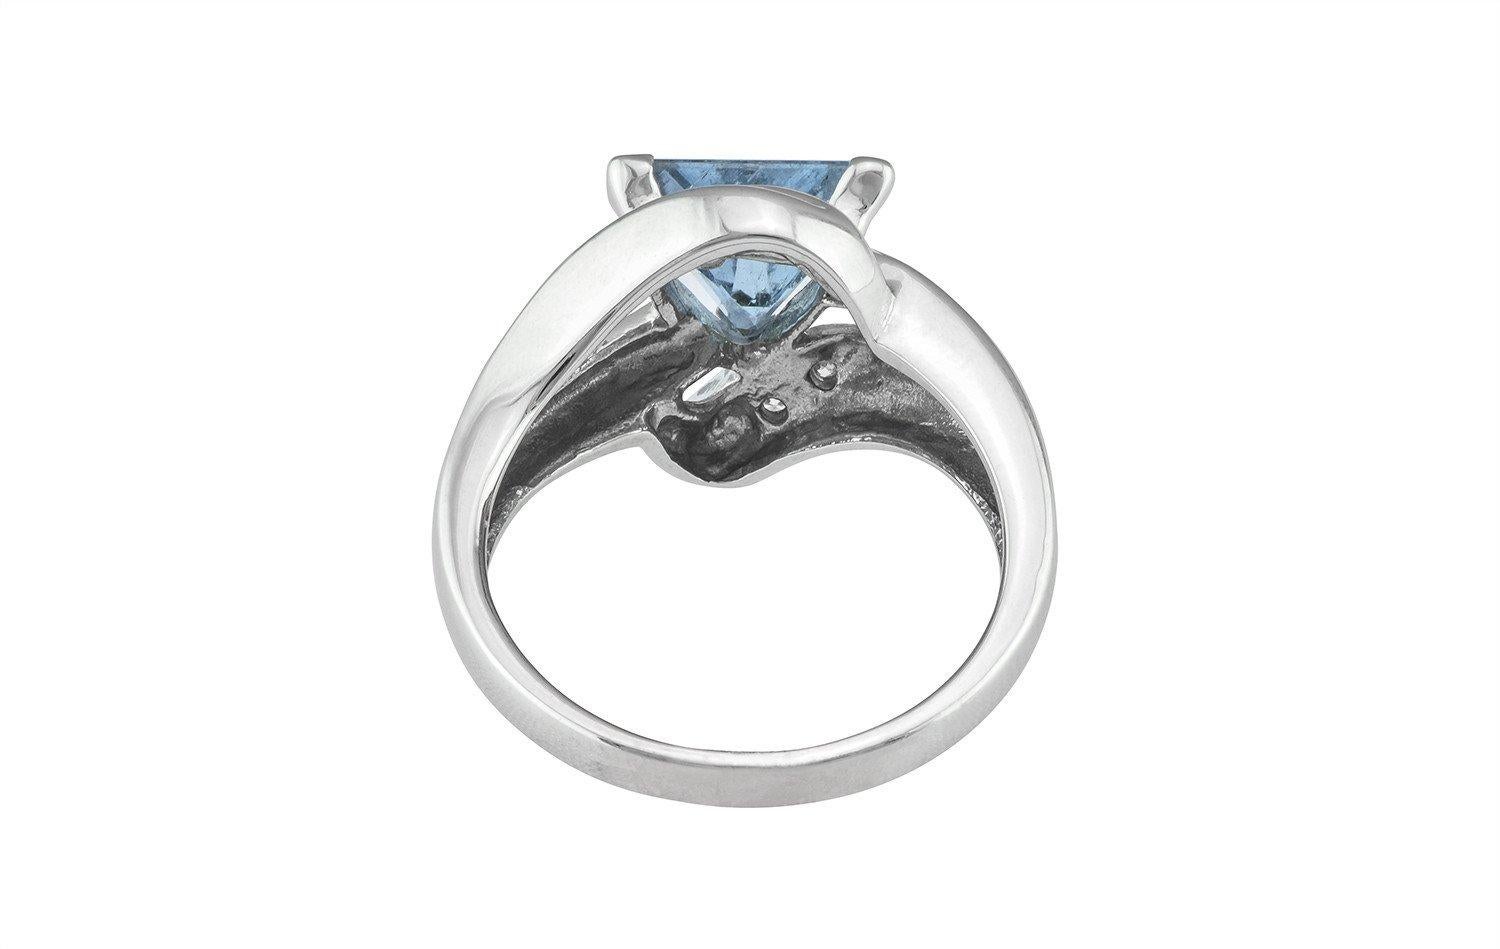 Contemporary 1.56 Carat Triangular Aquamarine Ring